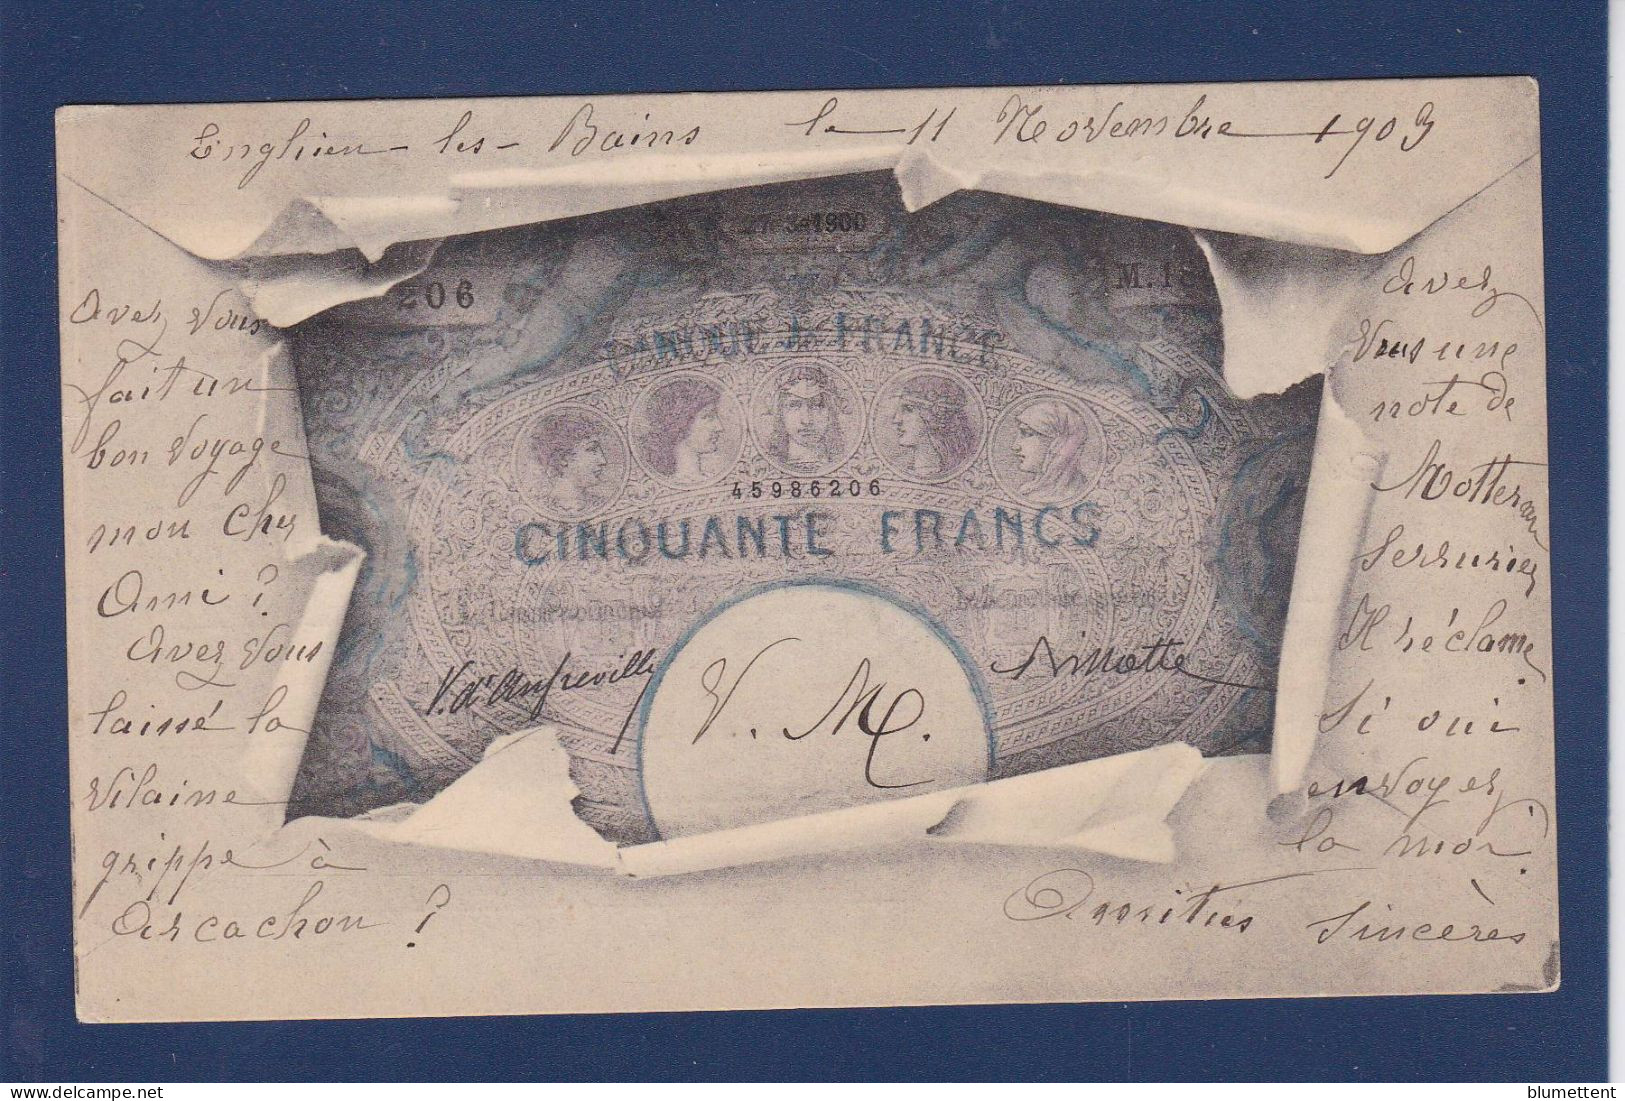 CPA Billet De Banque Banknote Circulé - Münzen (Abb.)